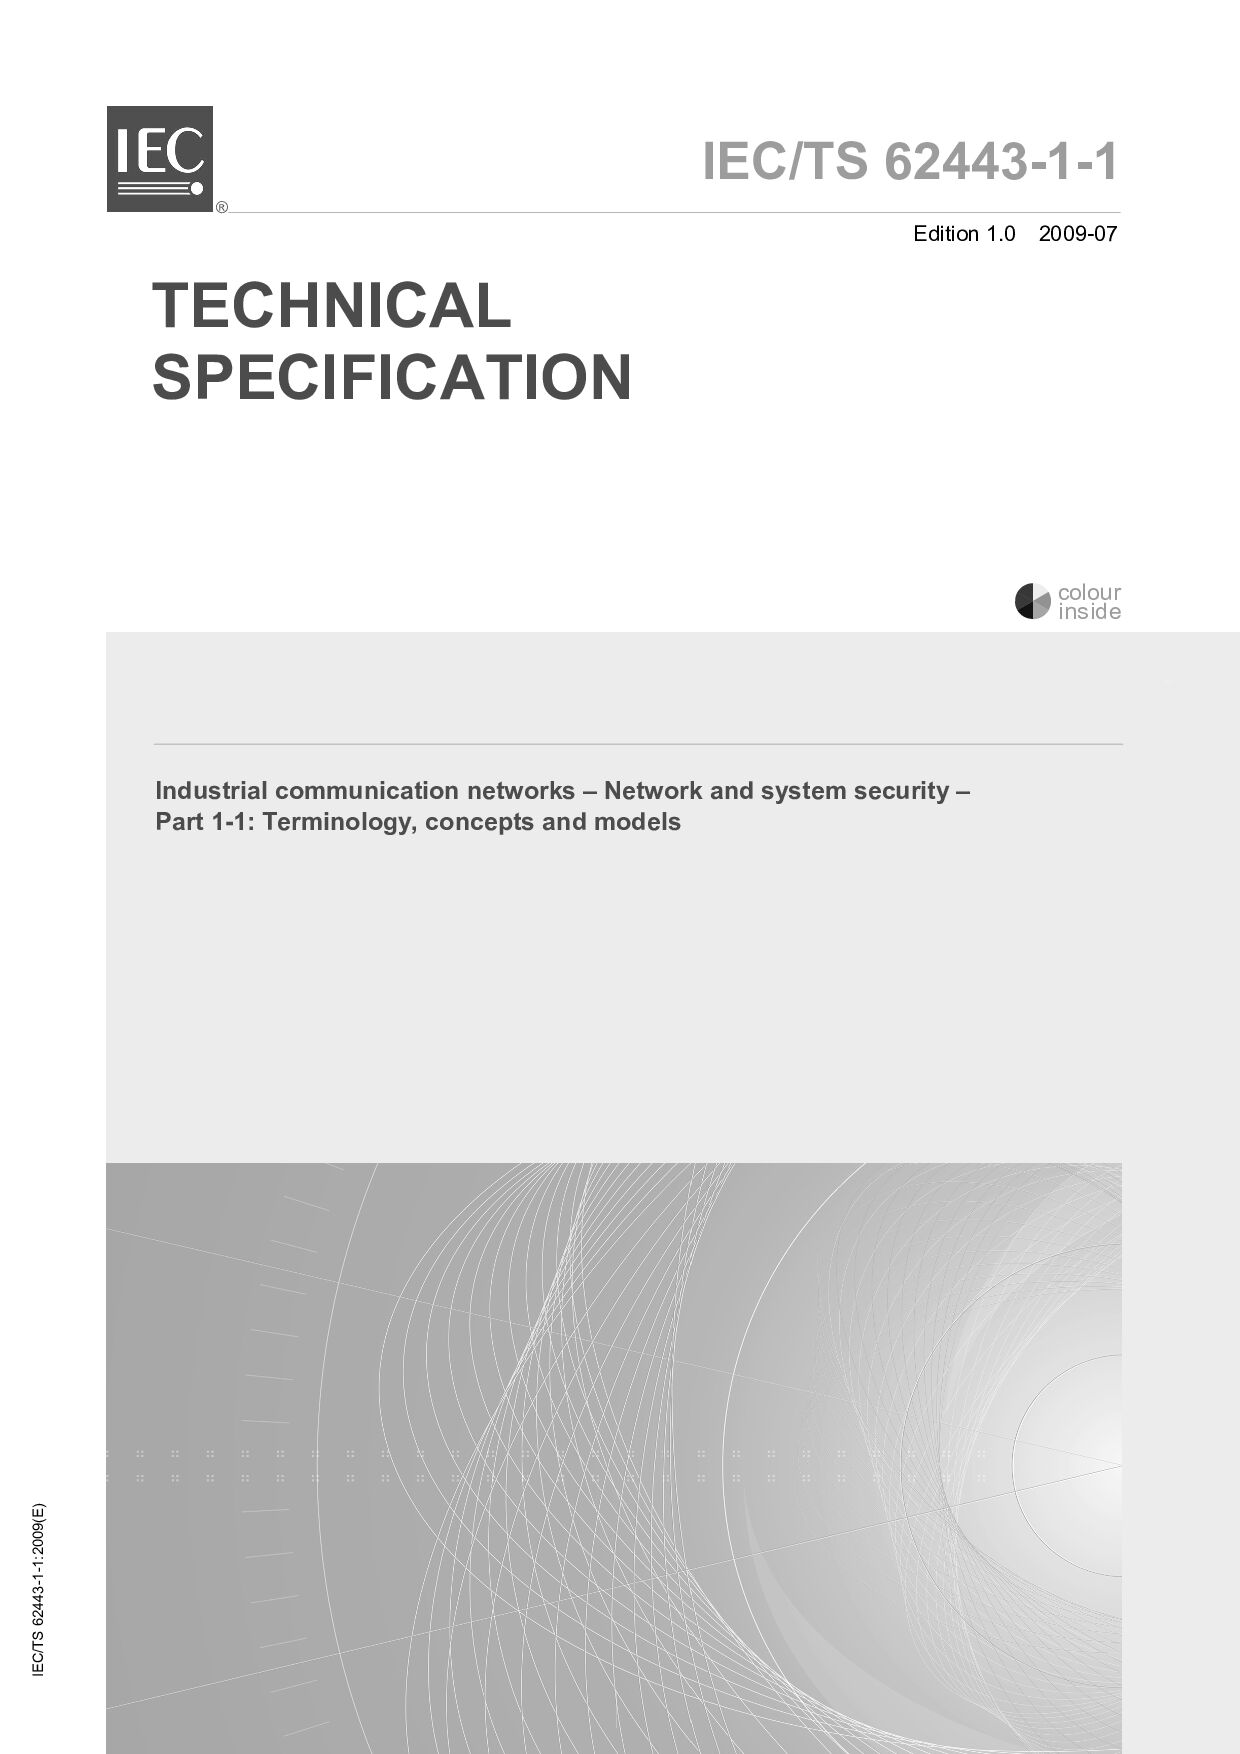 IEC TS 62443-1-1:2009